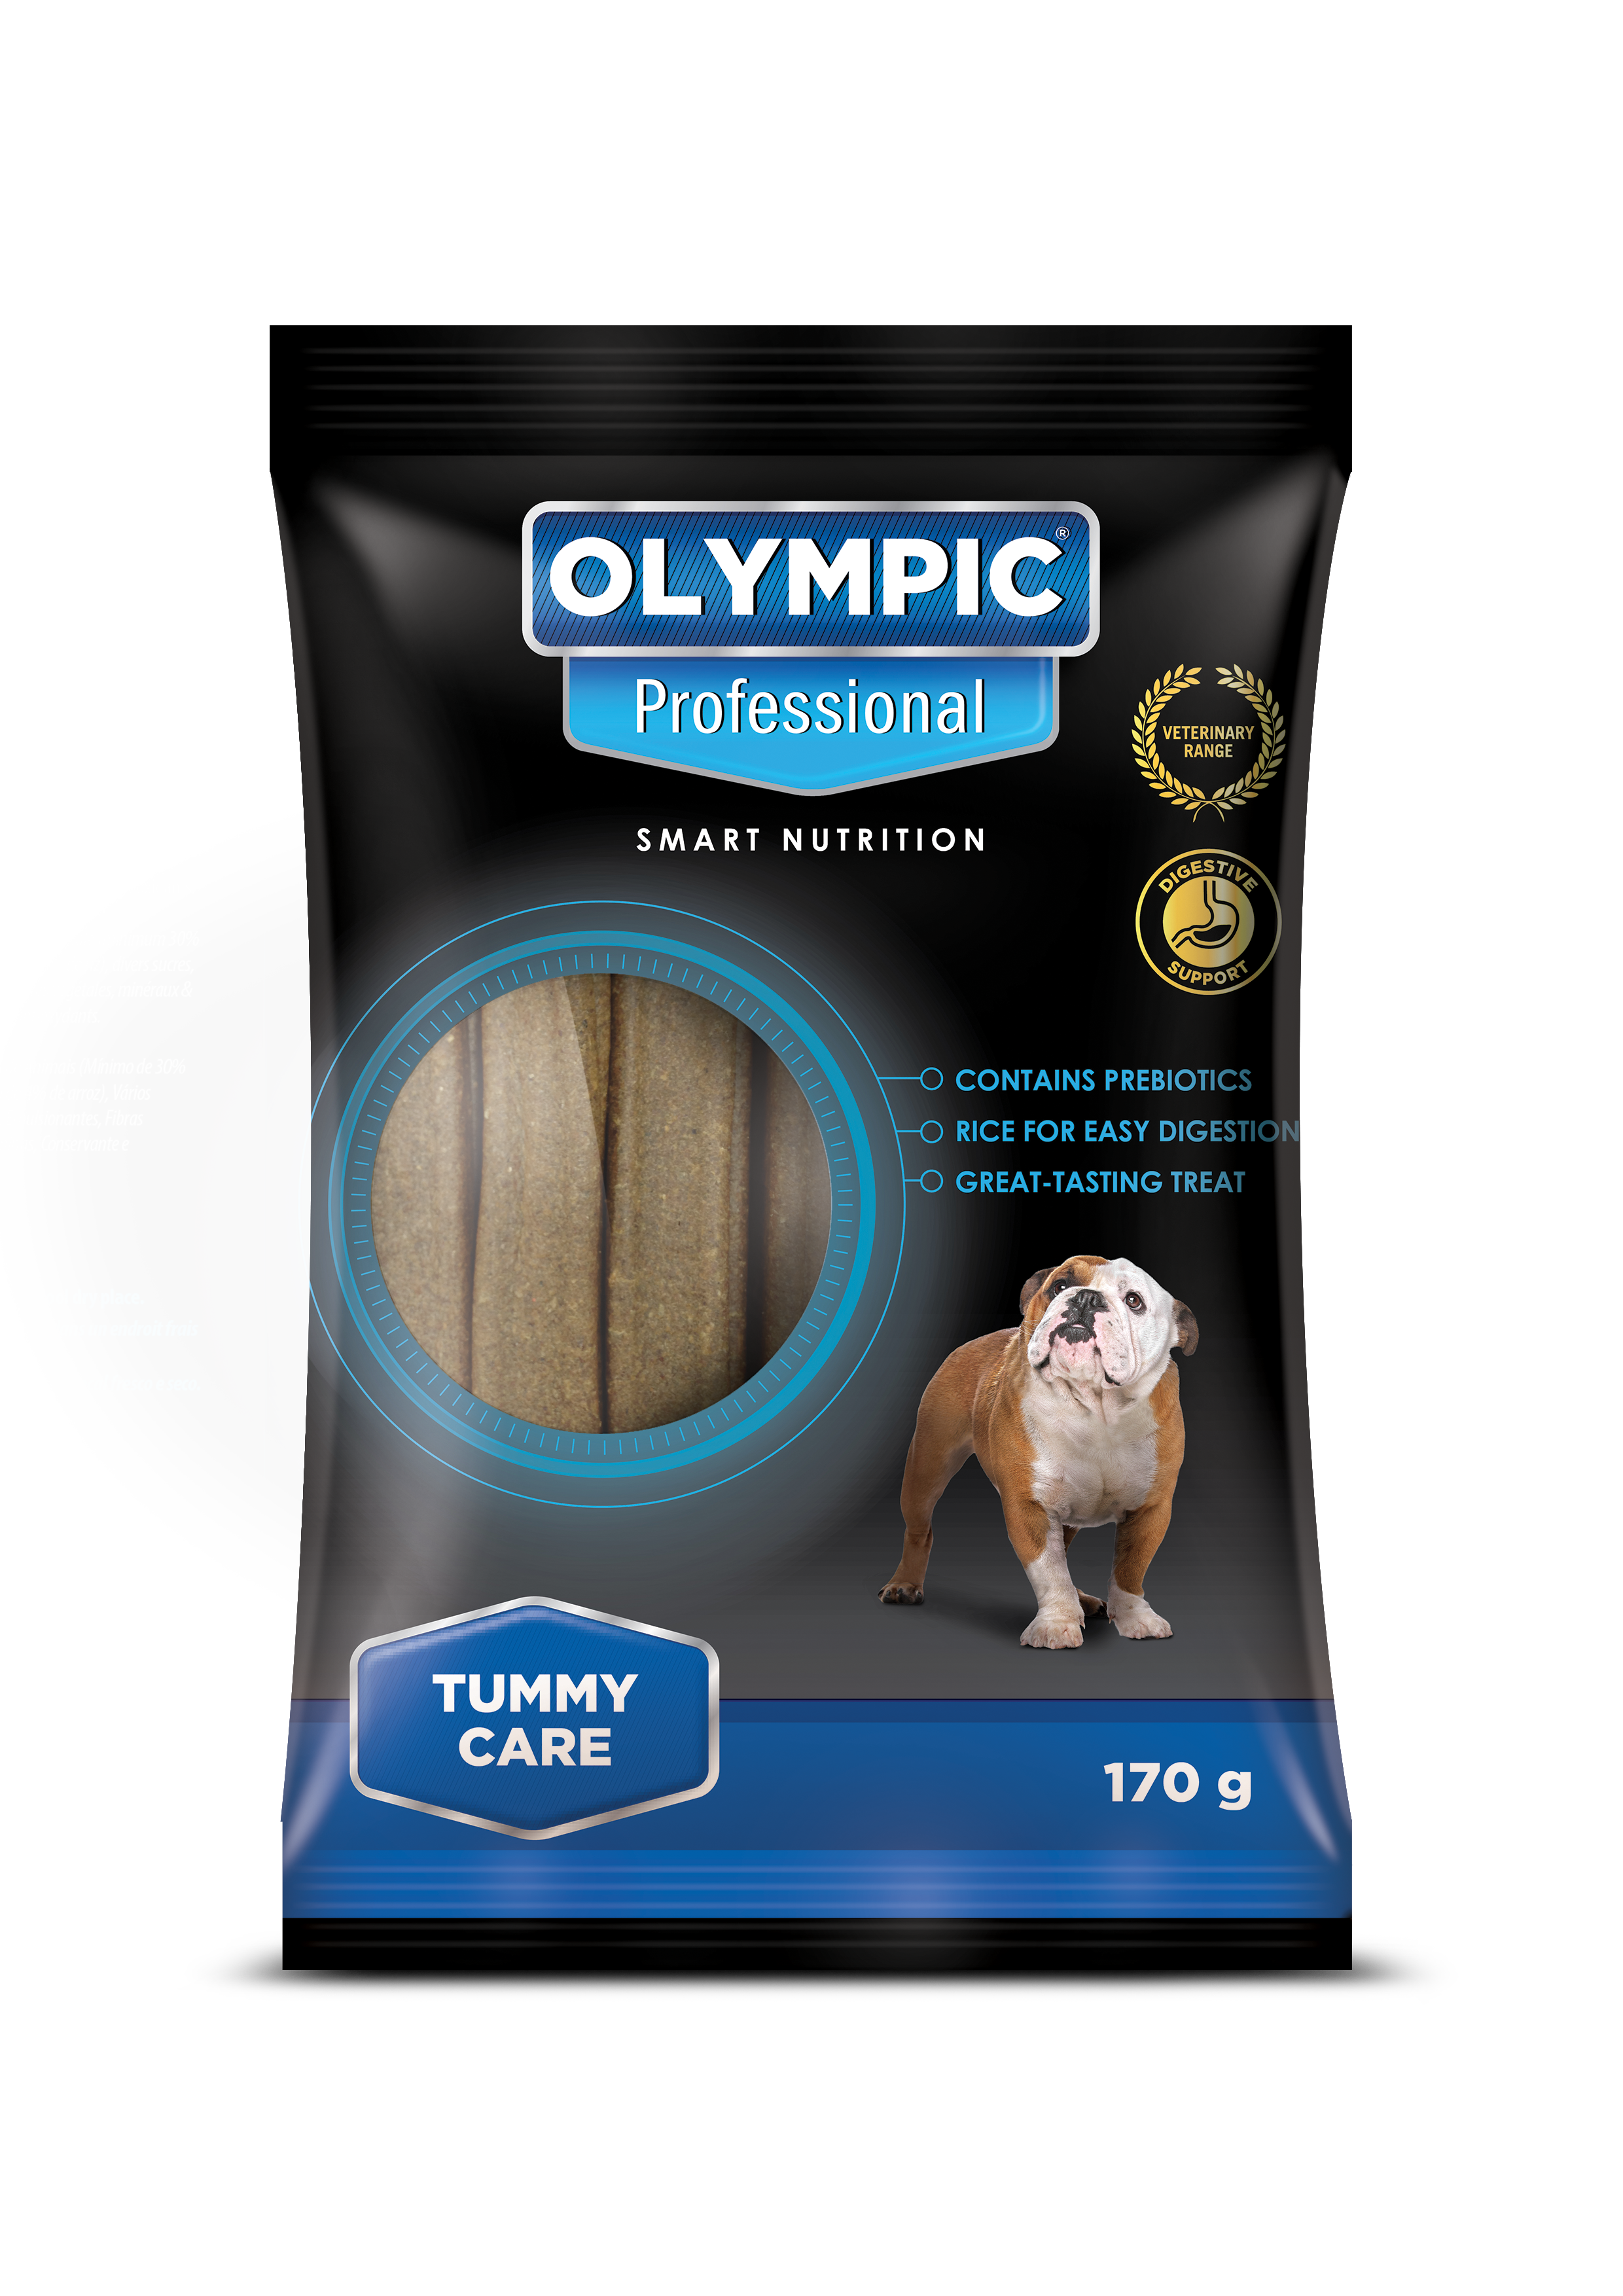 olympic-tummy-care-treats